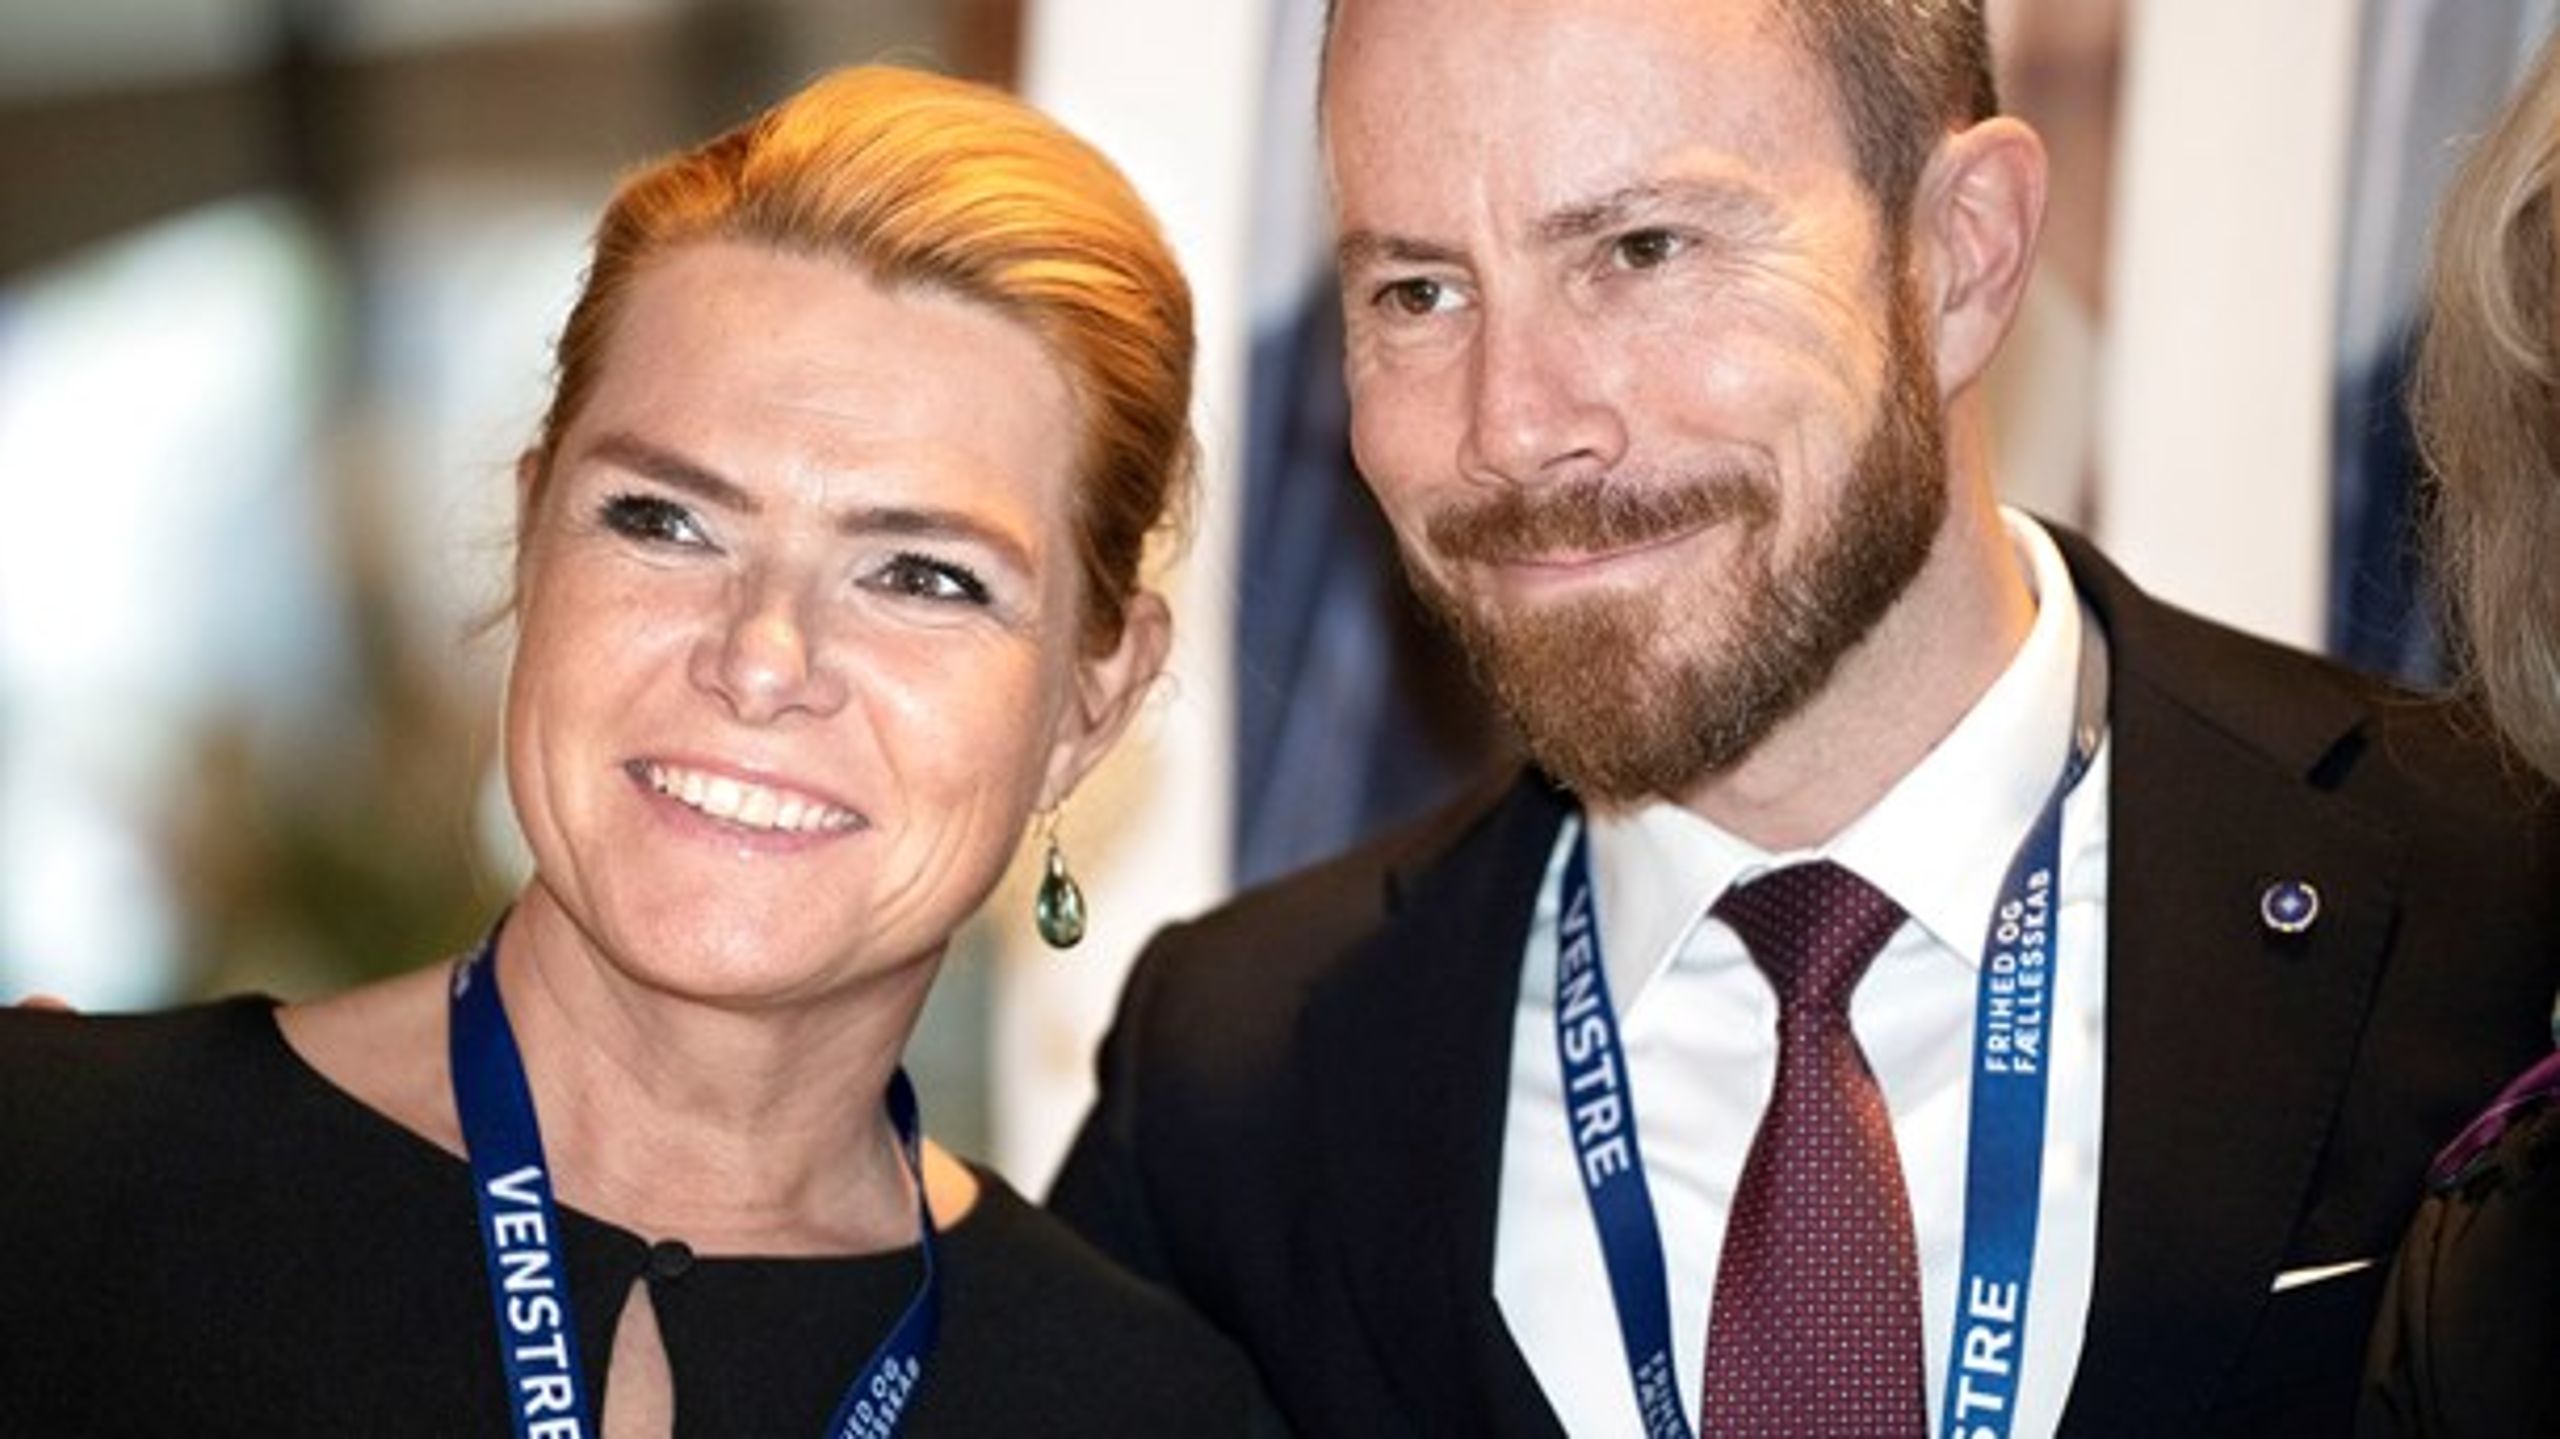 Den sandsynlige nye formand Jakob Ellemann-Jensen har ikke direkte anbefalet Inger Støjberg som næstformand, men kalder hende "et rigtig godt bud", skriver Jarl Cordua.